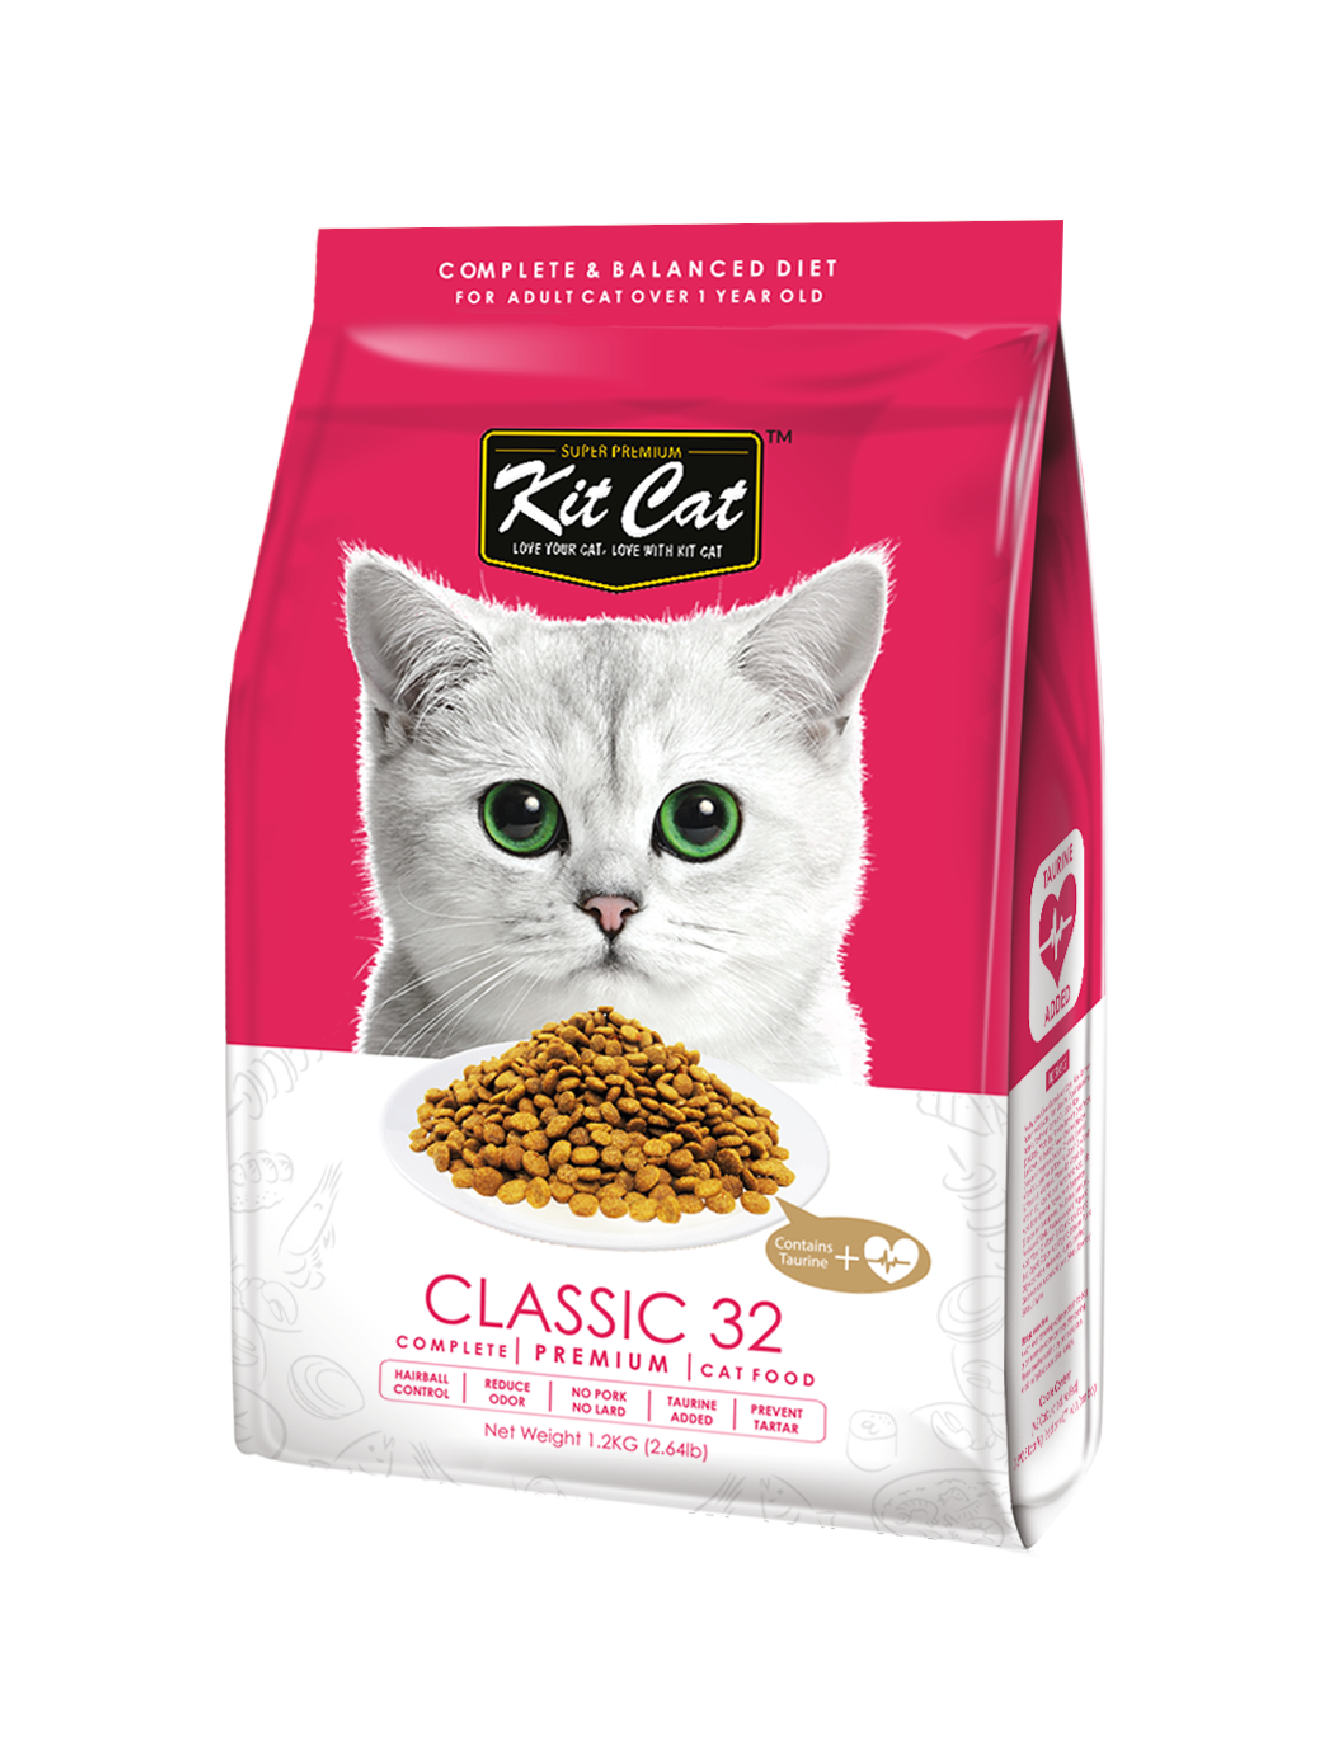 Kit Cat Premium Classic 32 Dry Cat Food 